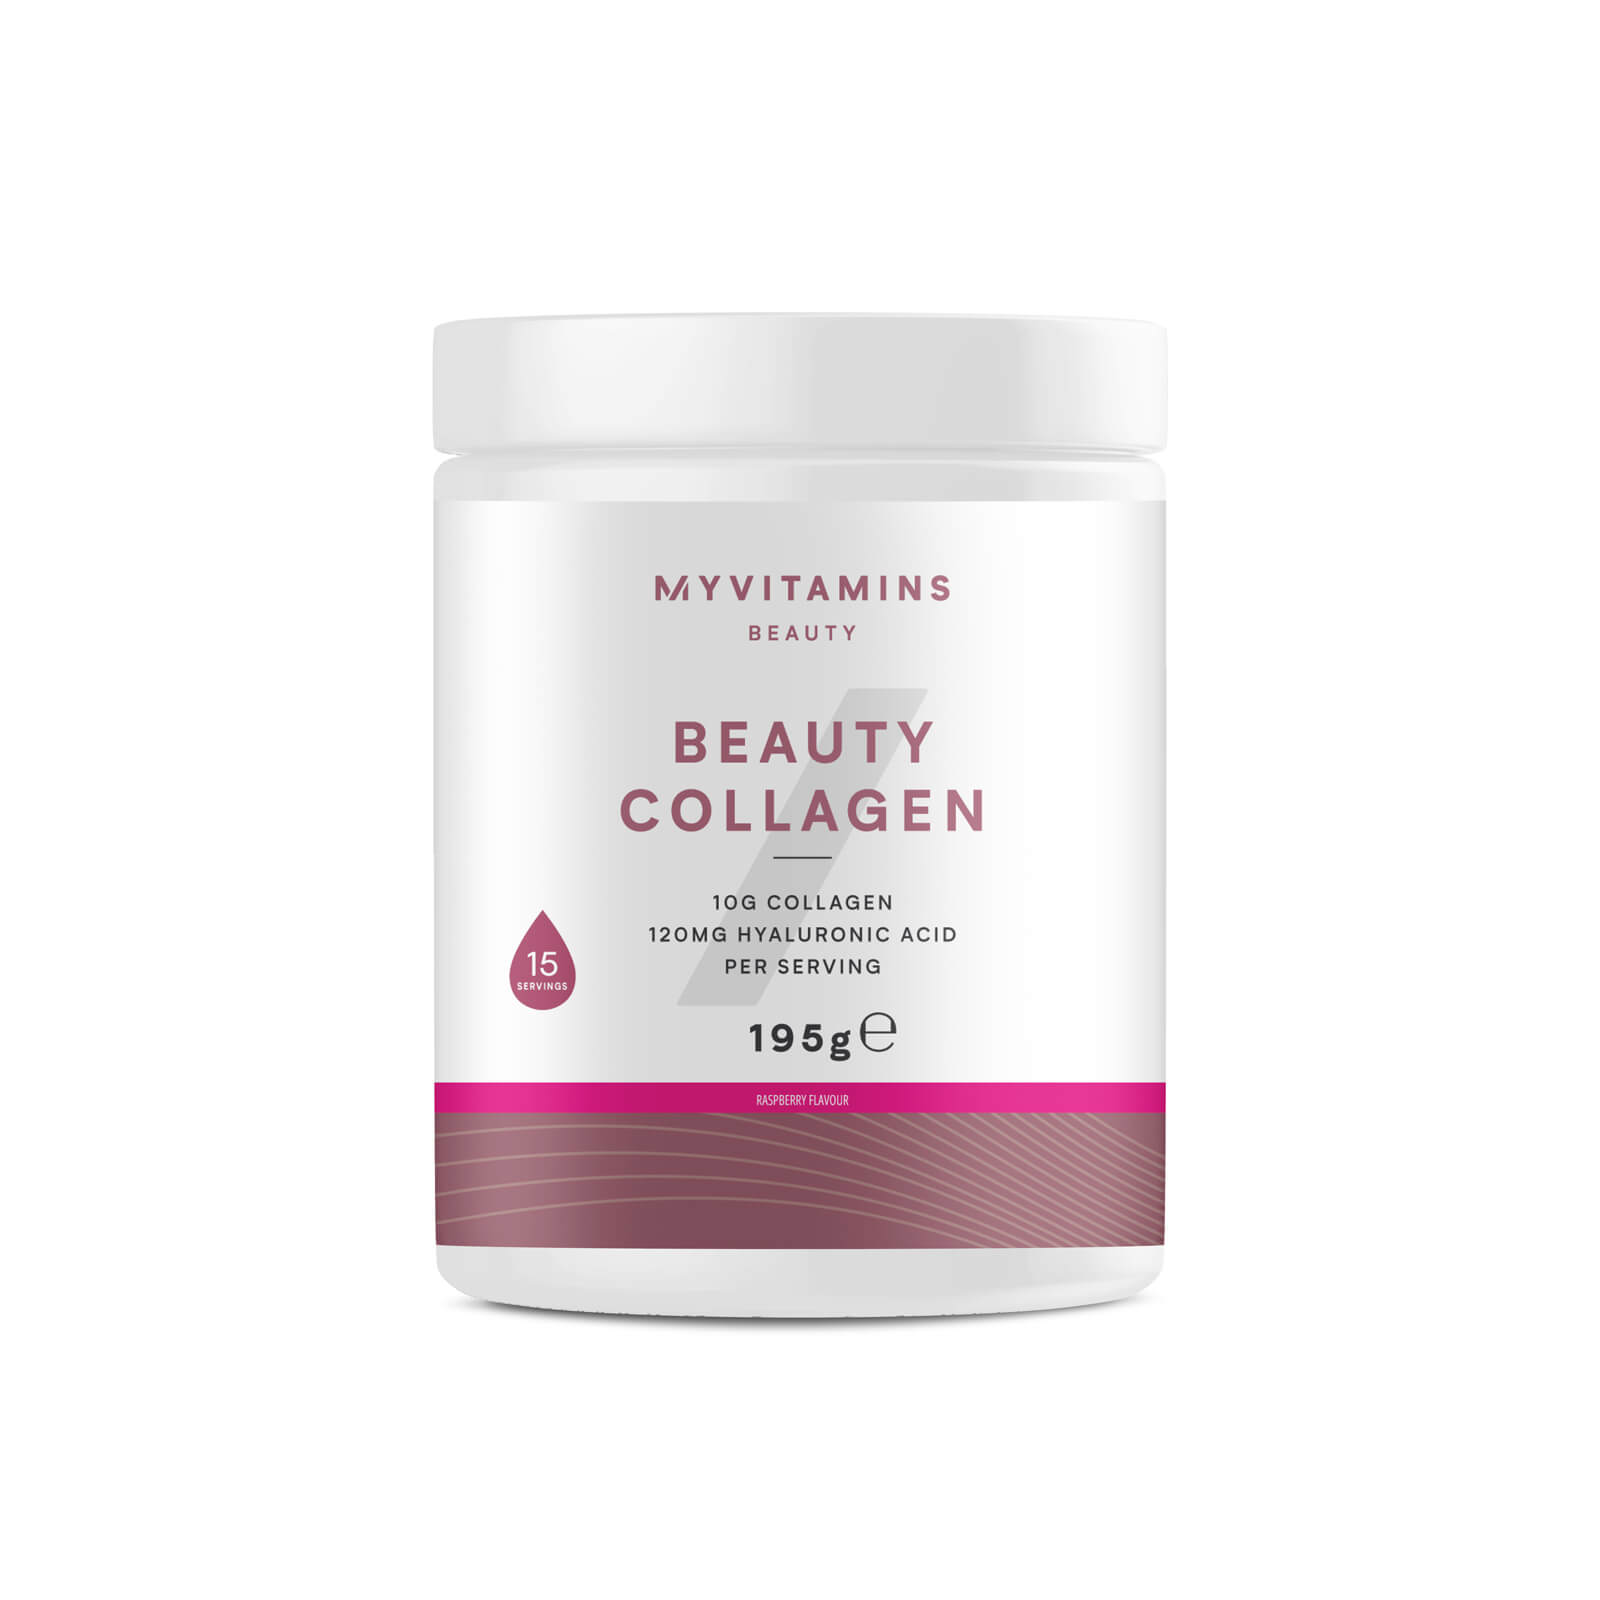 Myvitamins Beauty Collagen Powder - 195g - Raspberry